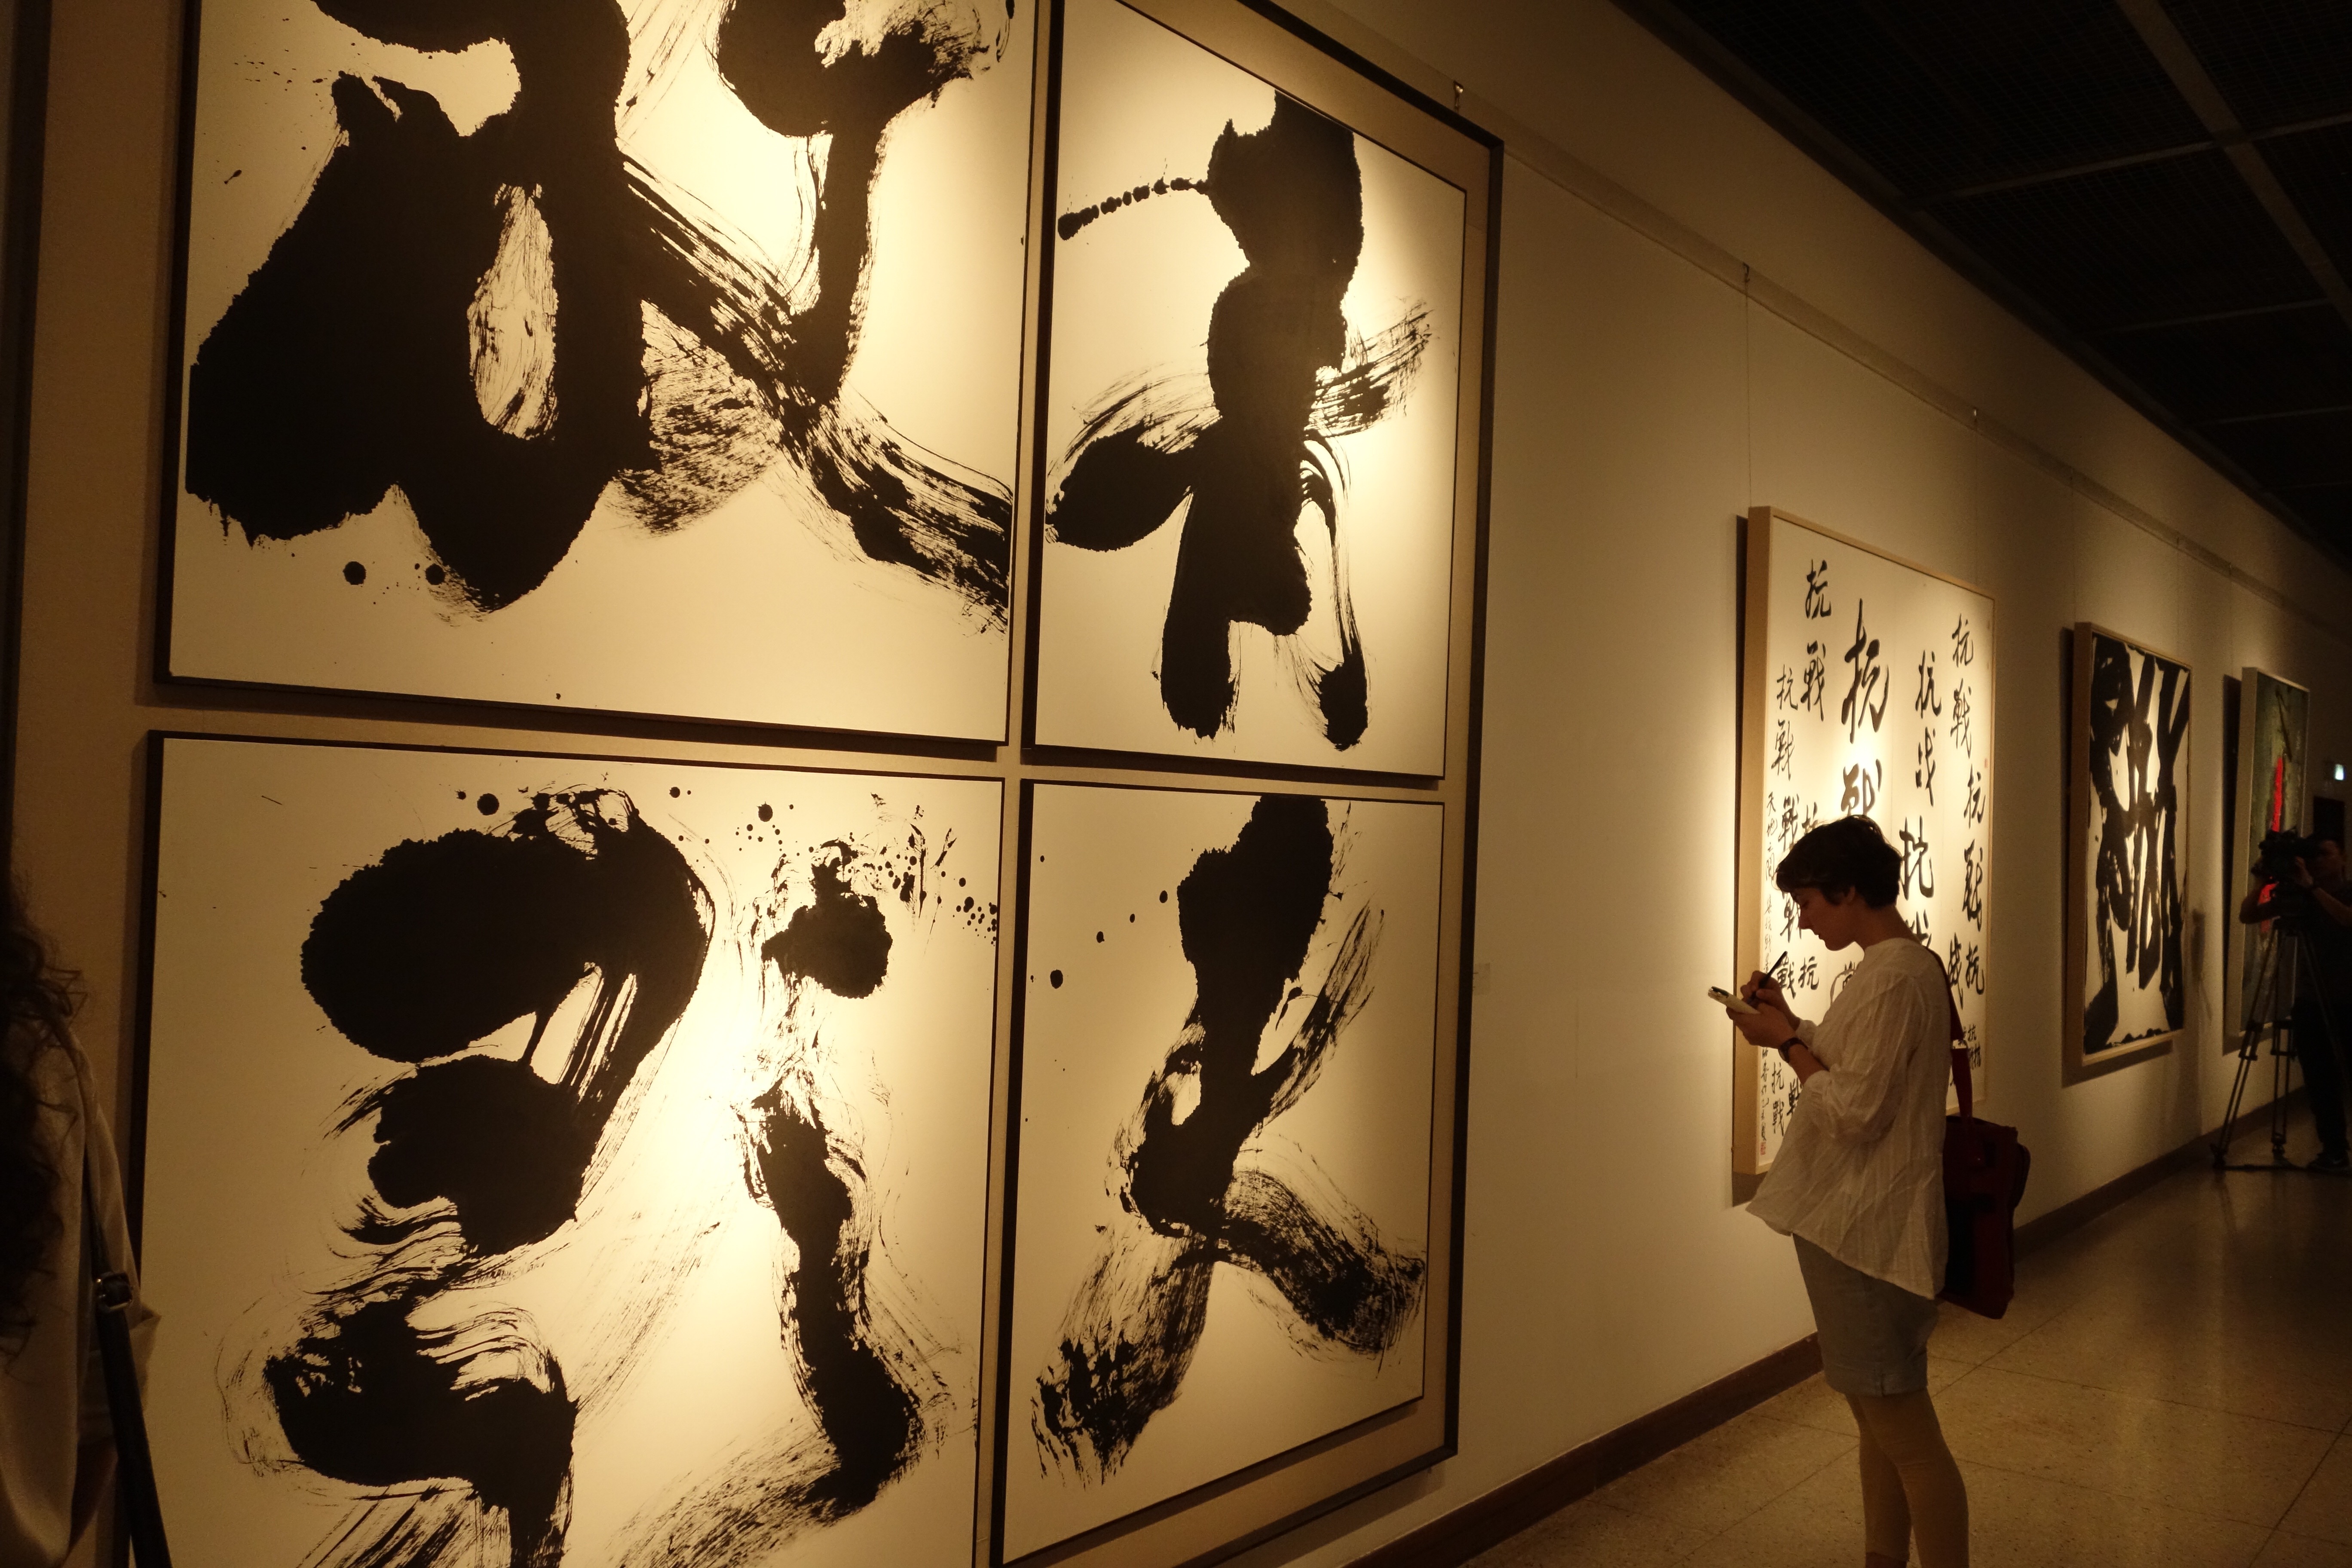 《青天放歌》（纸本水墨书法 200 x 200 cm ）第三届《杭州国际现代书法艺术展》中国美术学院美术馆展出现场 2015年 